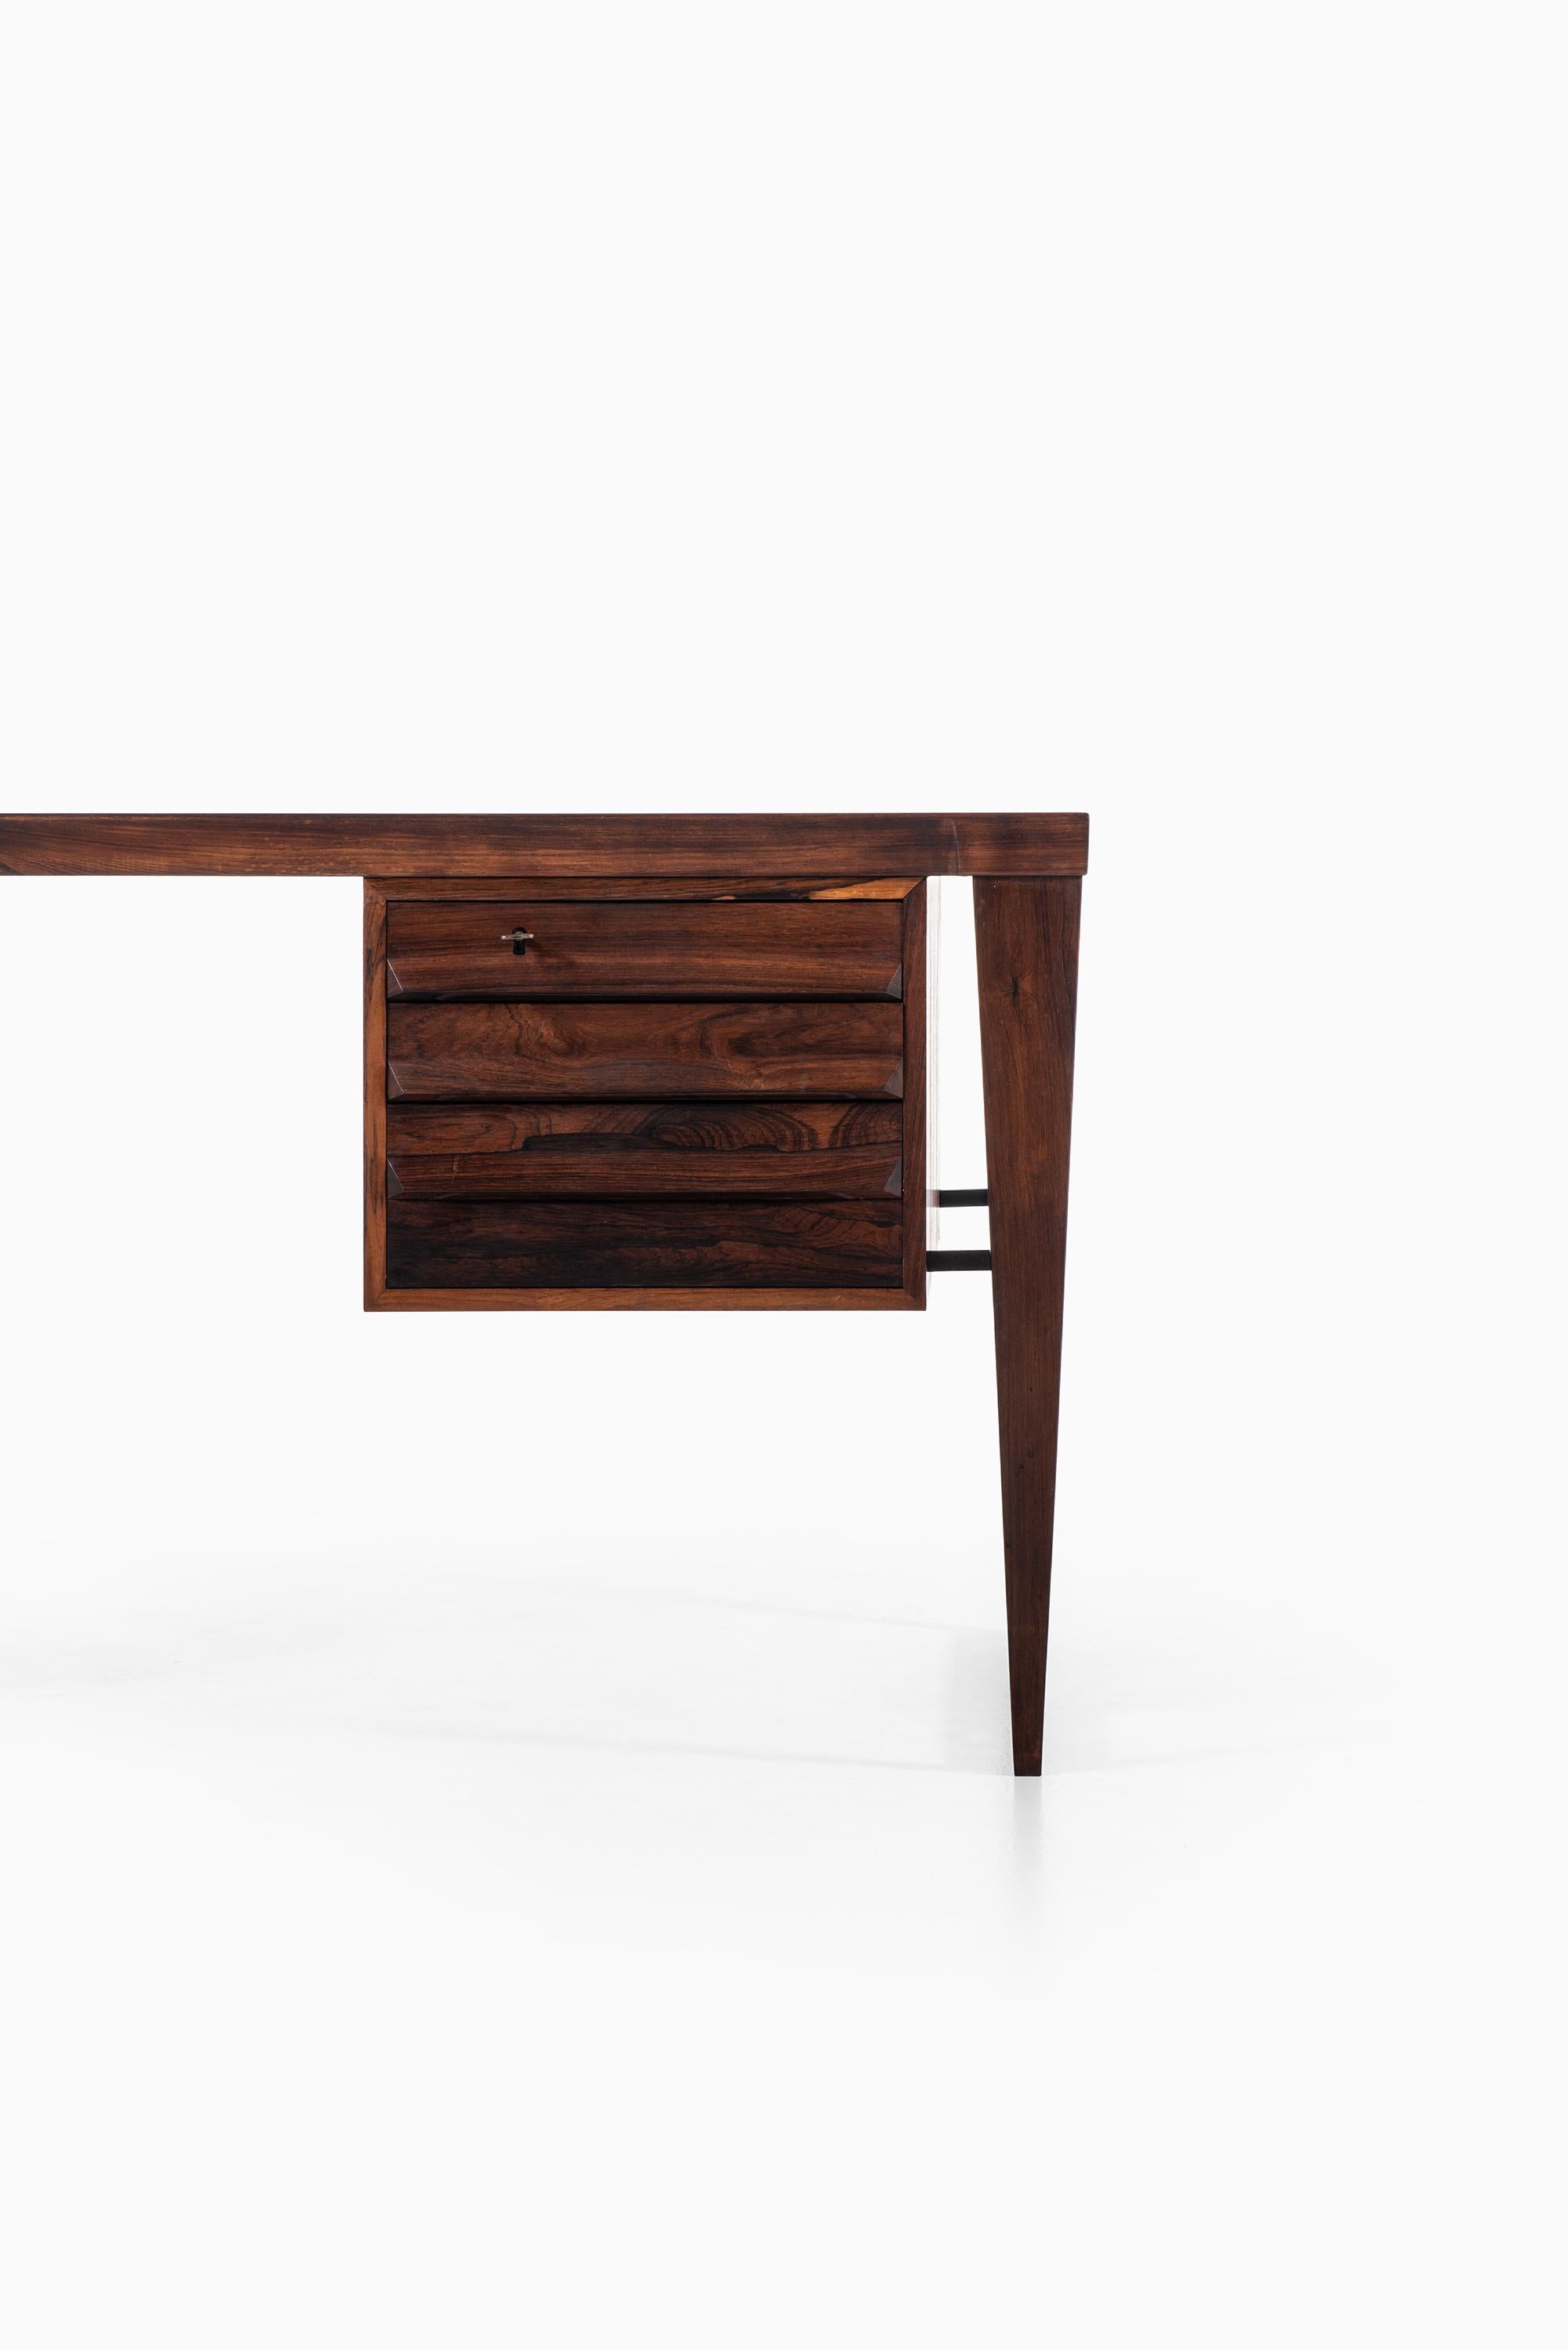 Rare freestanding desk model 70 designed by Kai Kristiansen. Produced by Feldballes Møbelfabrik in Denmark.